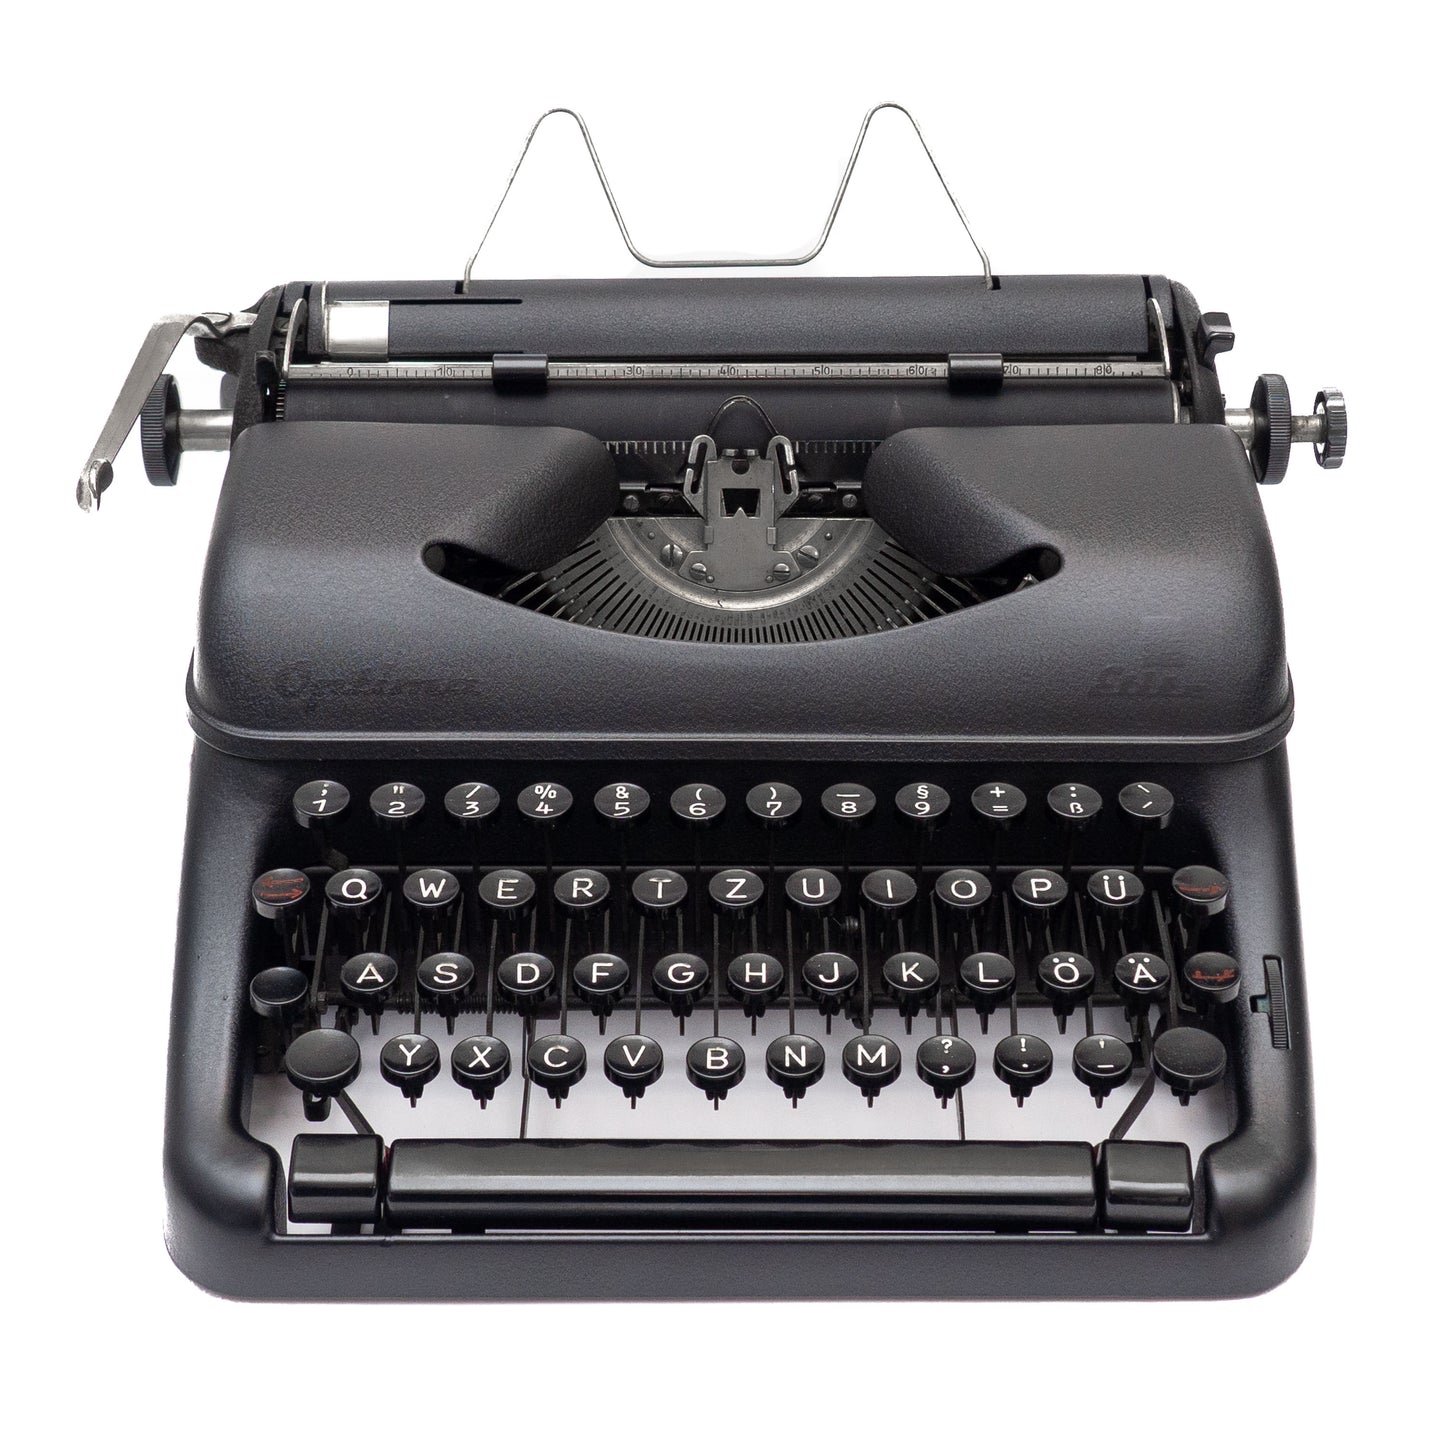 Black Typewriter Optima Elite